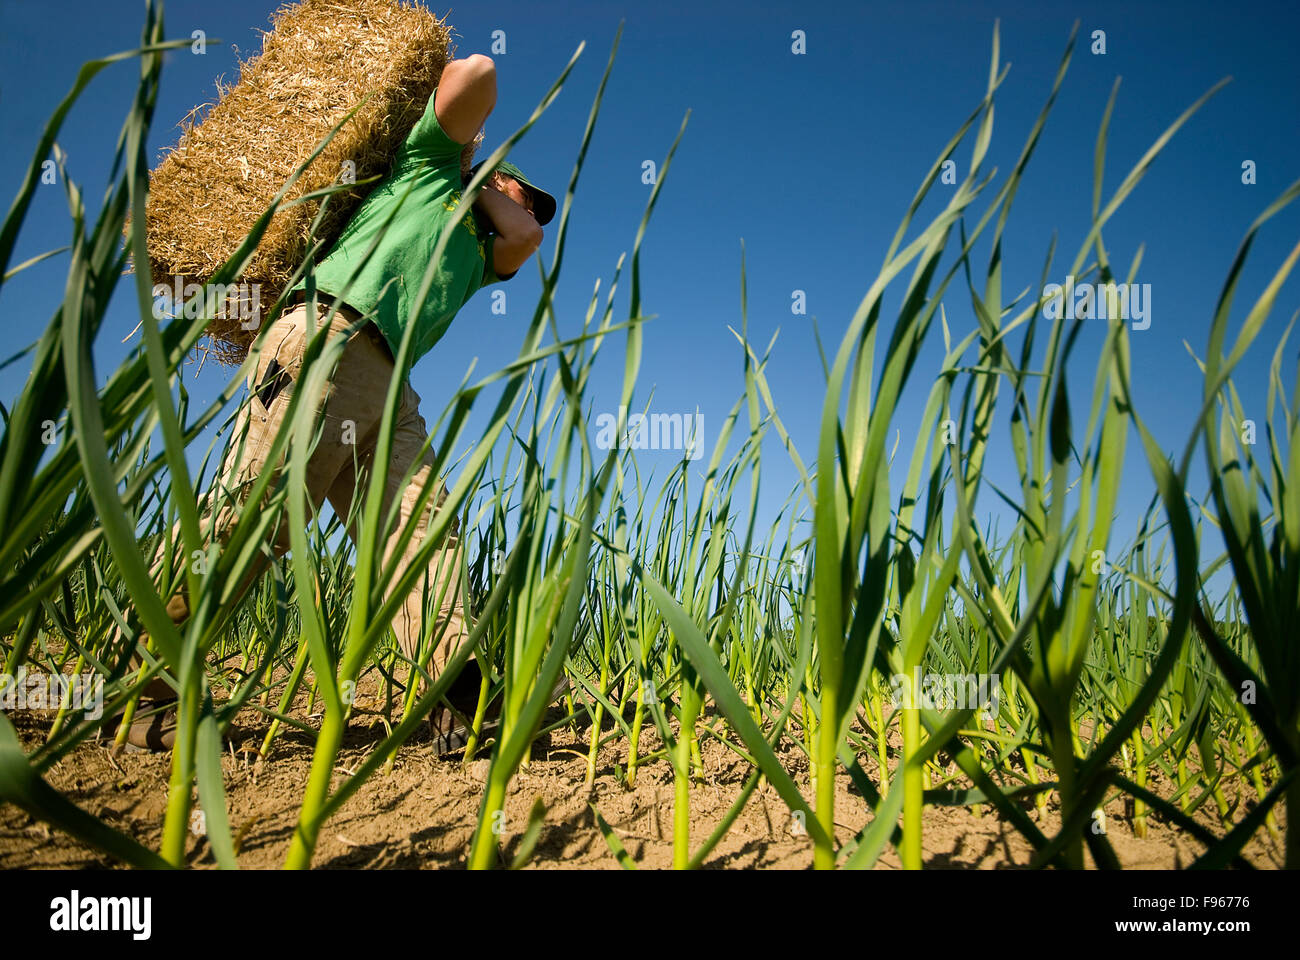 Un agricoltore cale paglia per diffondere tra il suo raccolto di aglio. Foto Stock